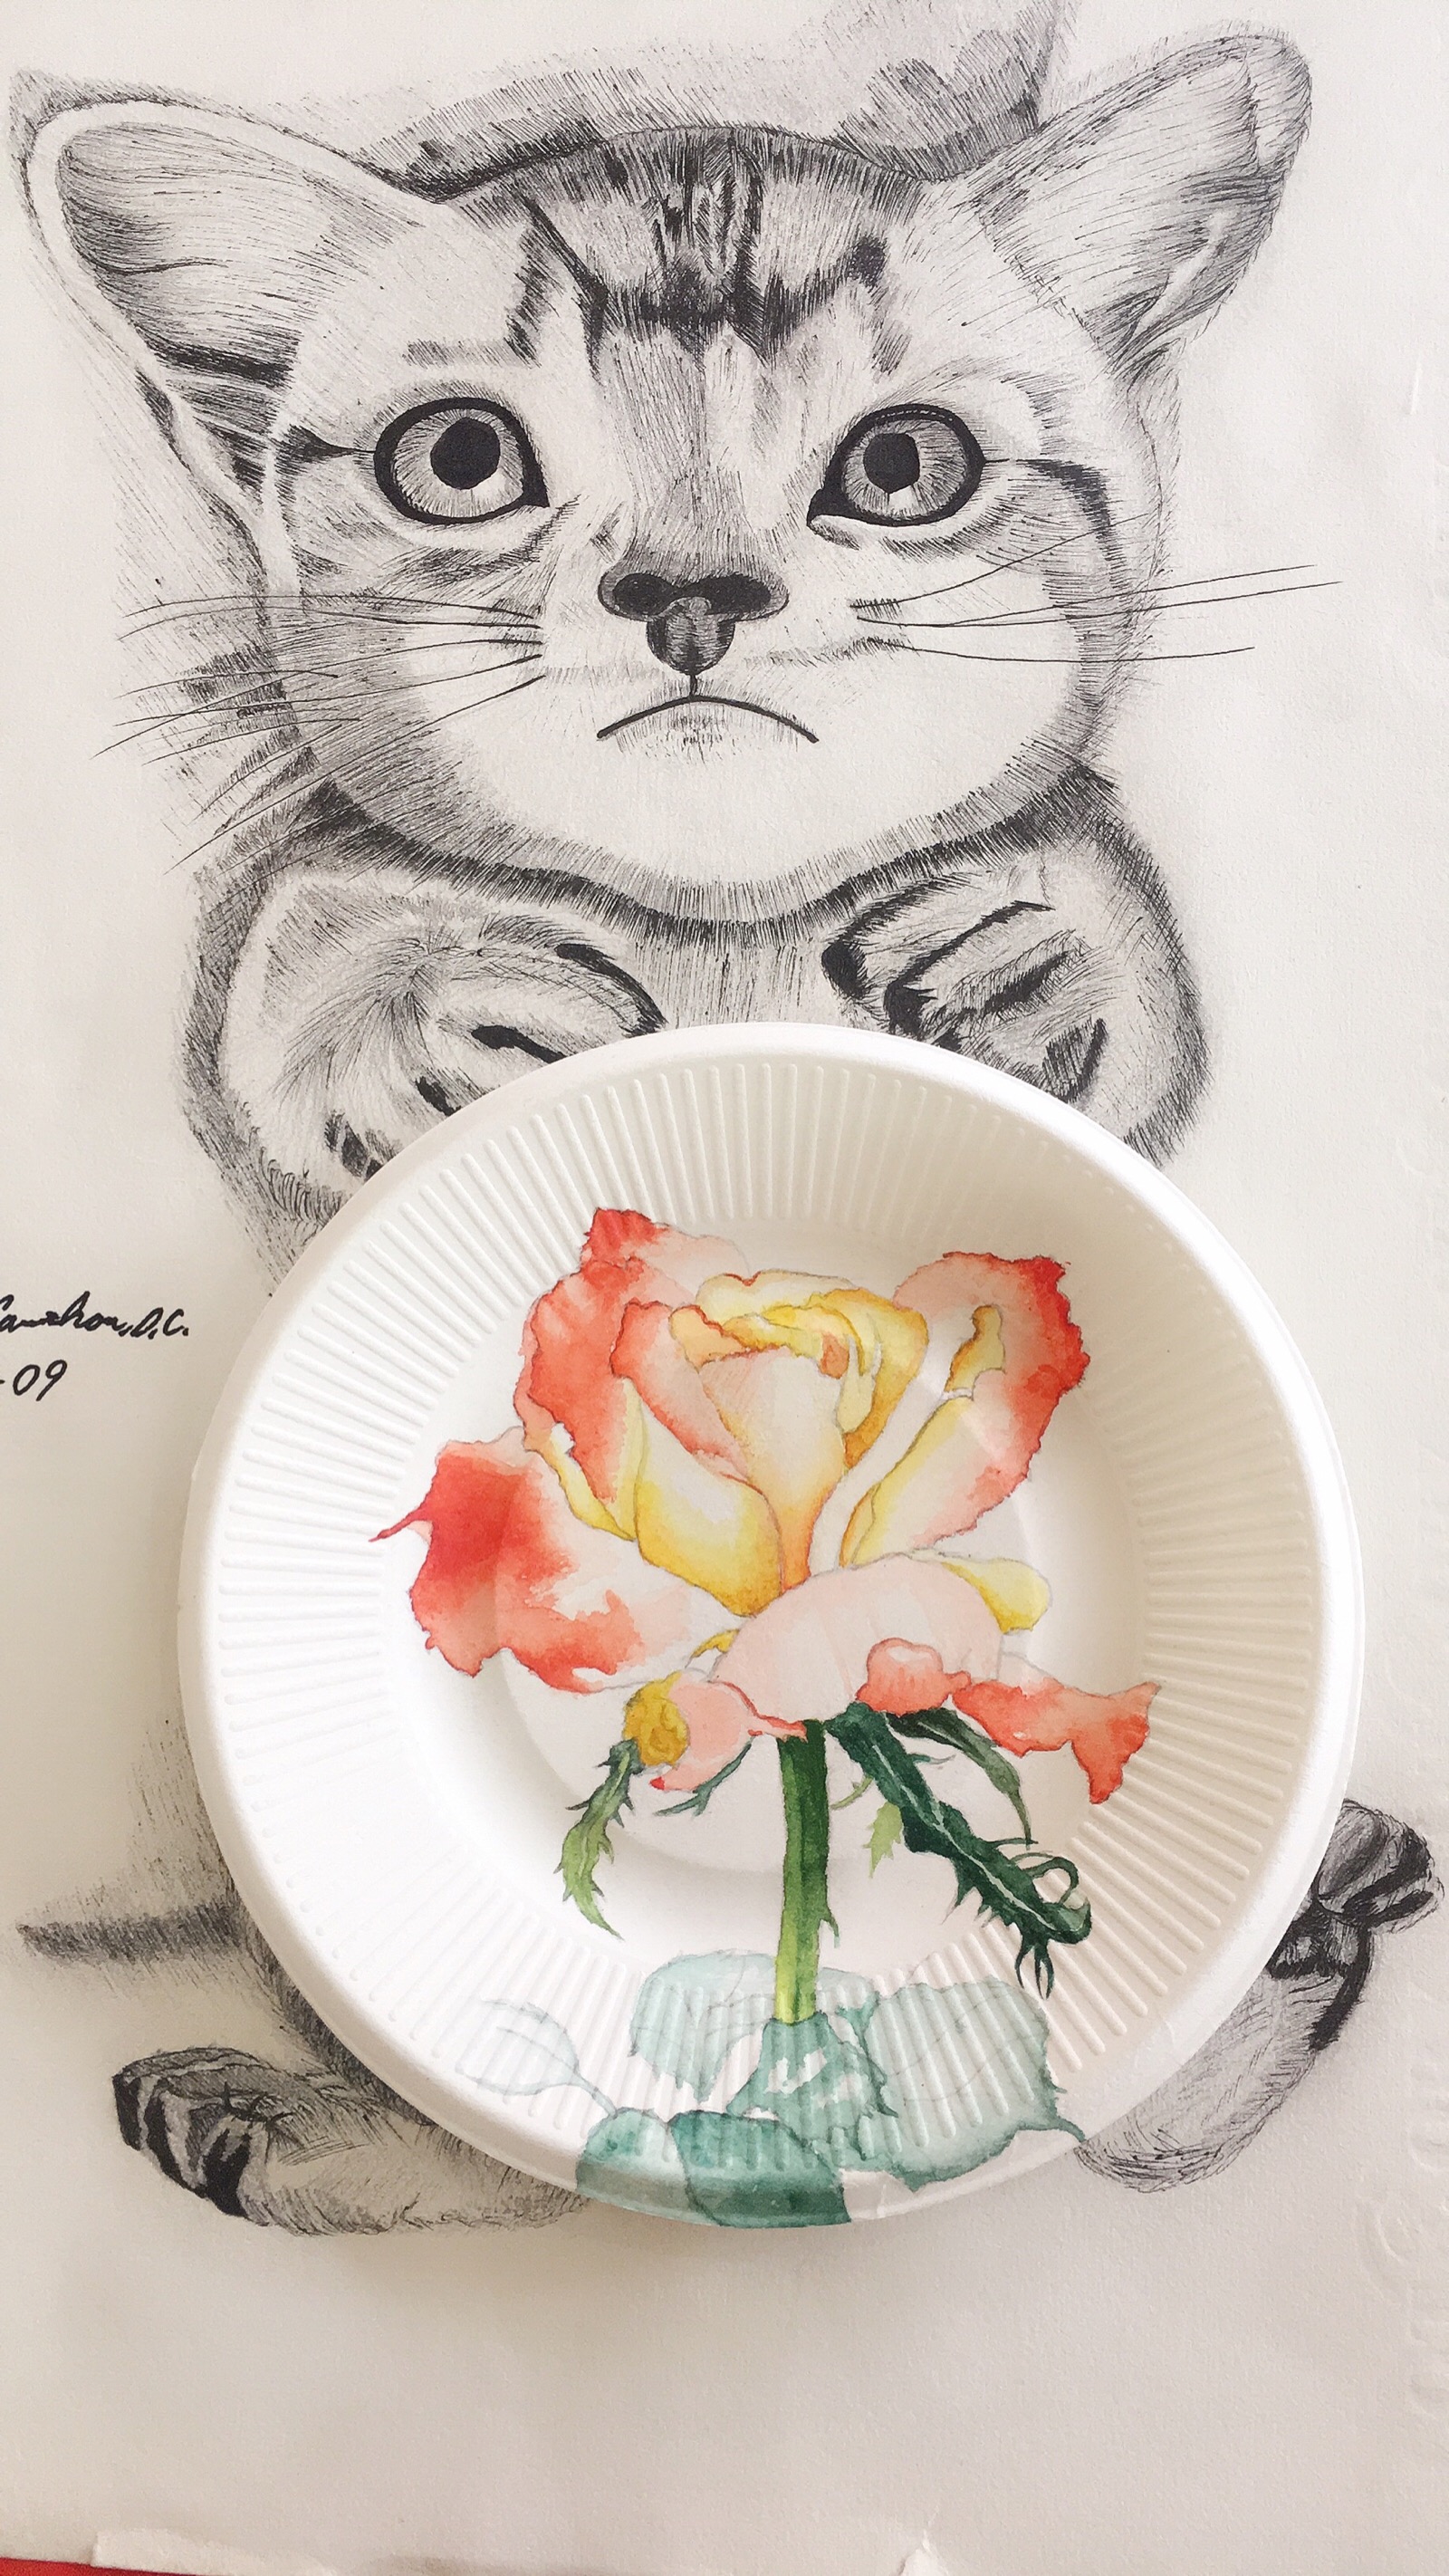 蛋糕盘子创意绘画花朵图片